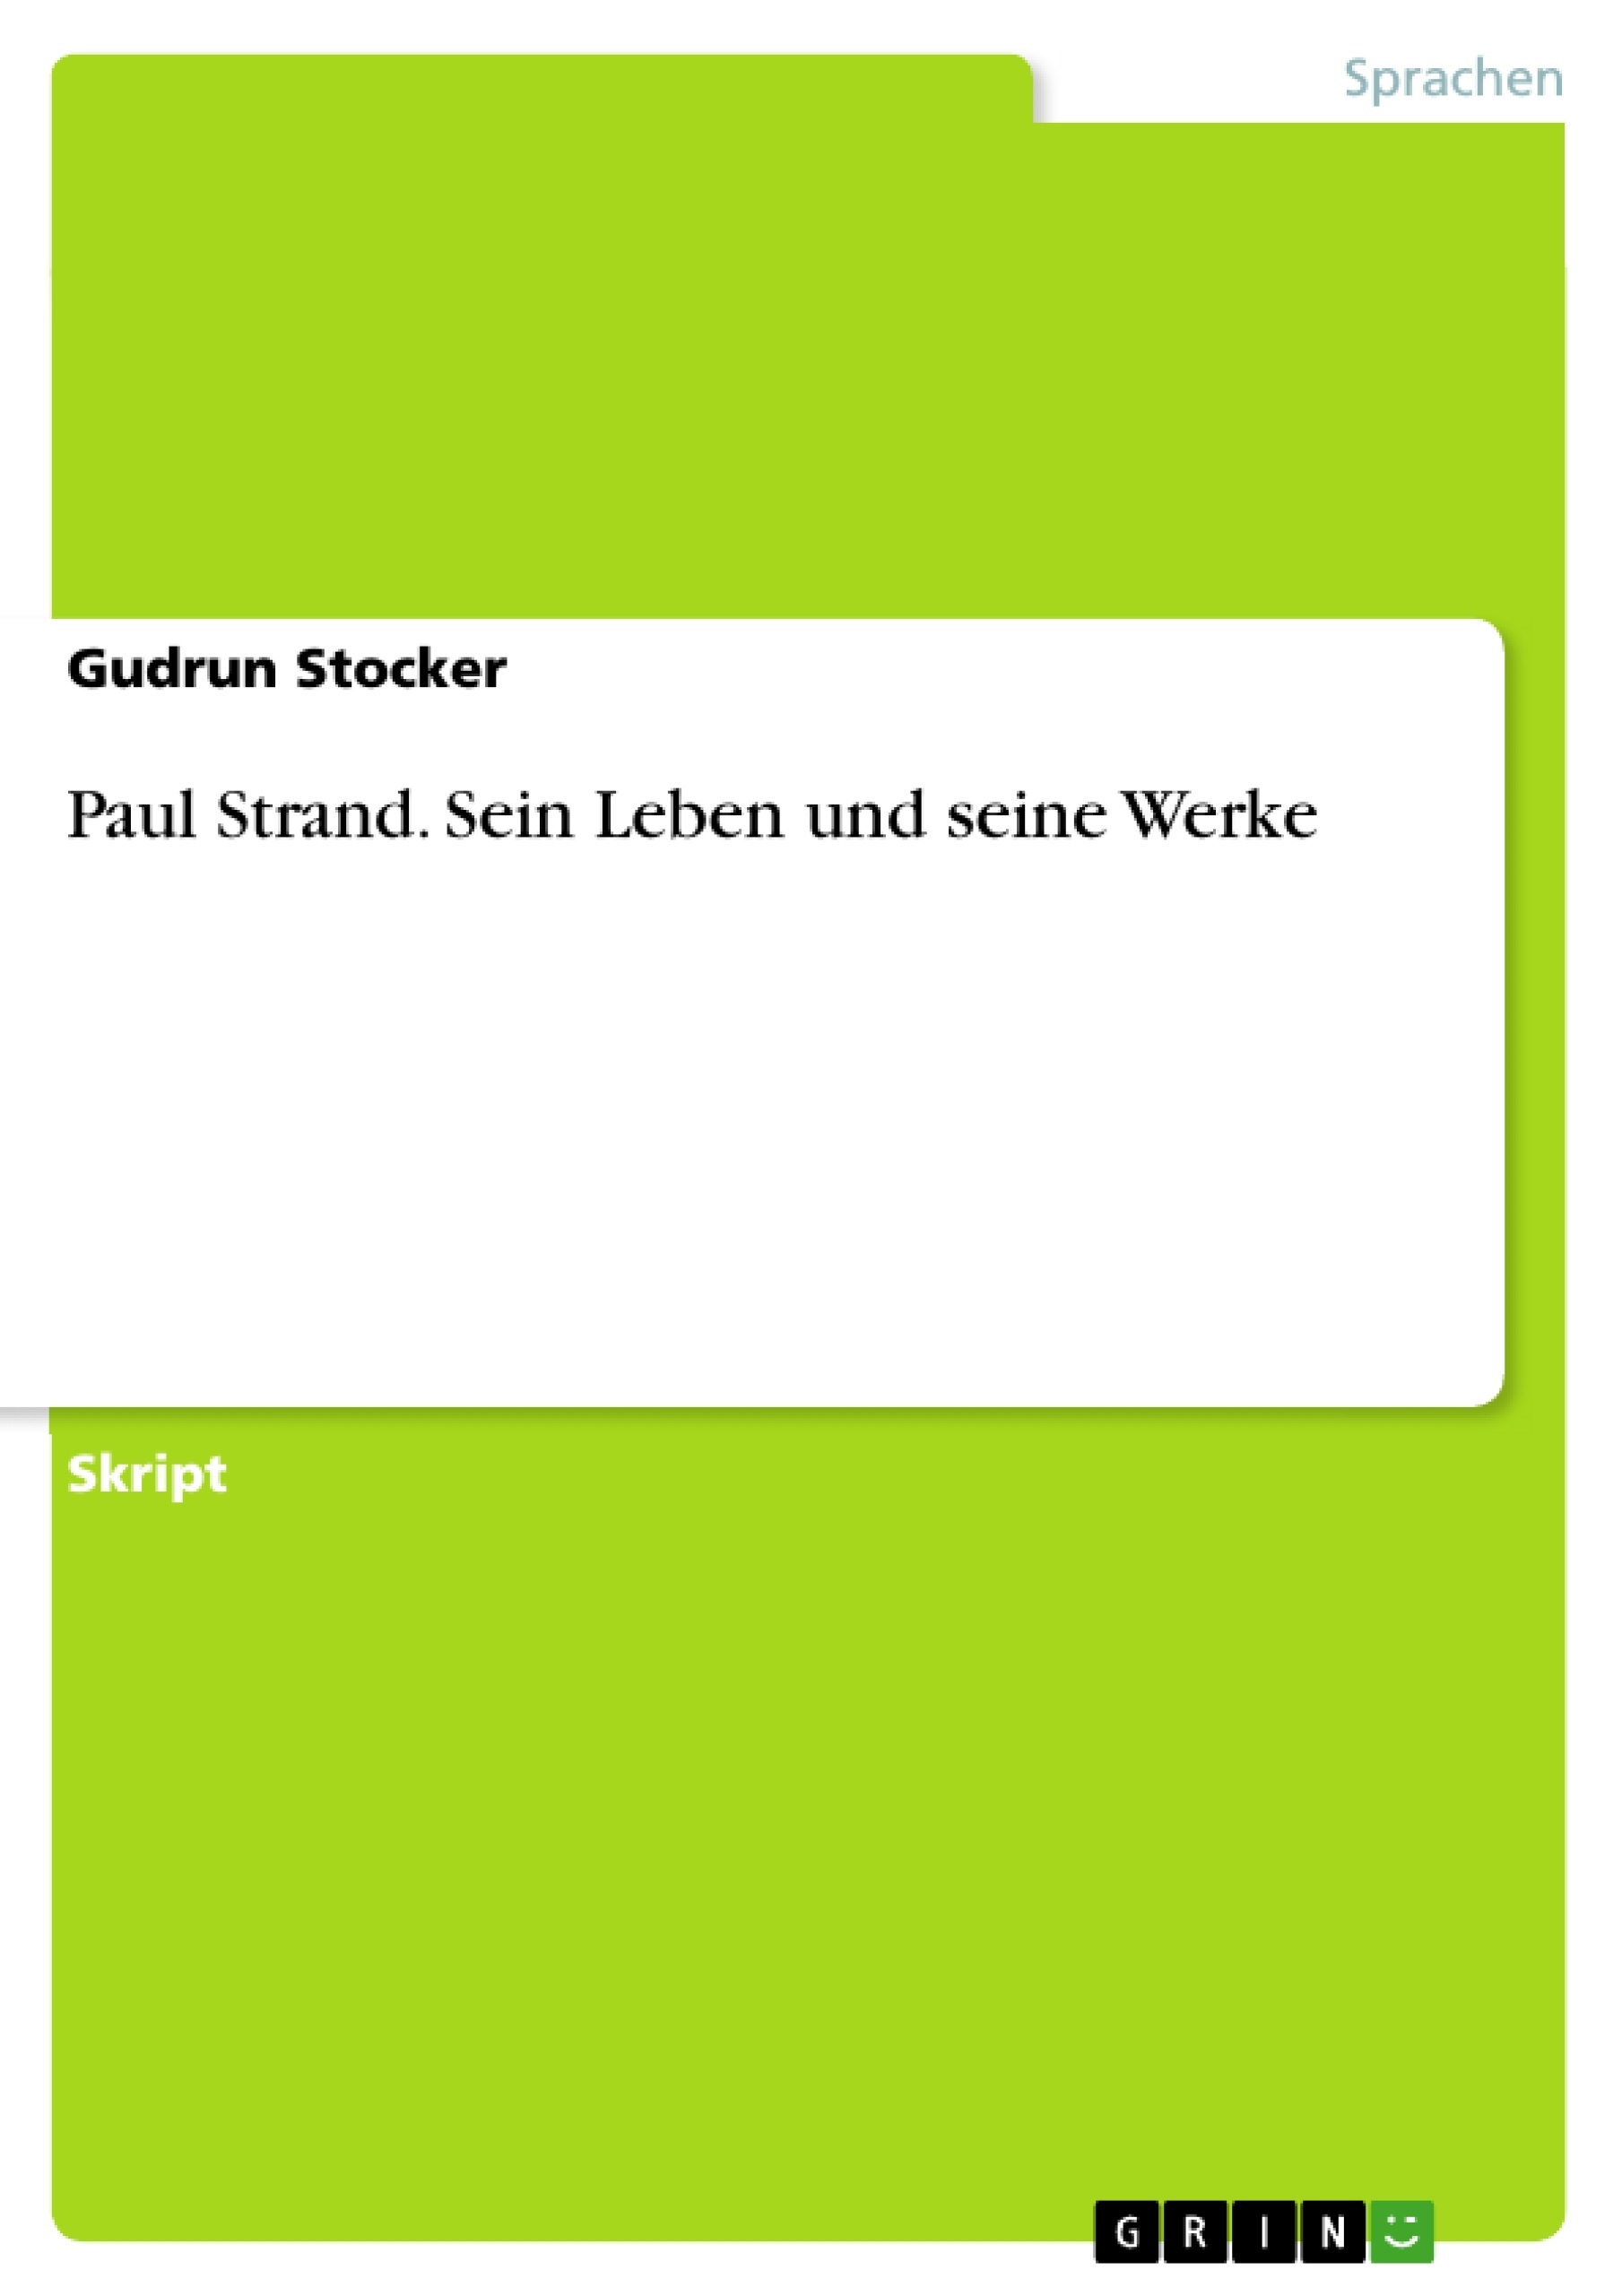 Title: Paul Strand. Sein Leben und seine Werke